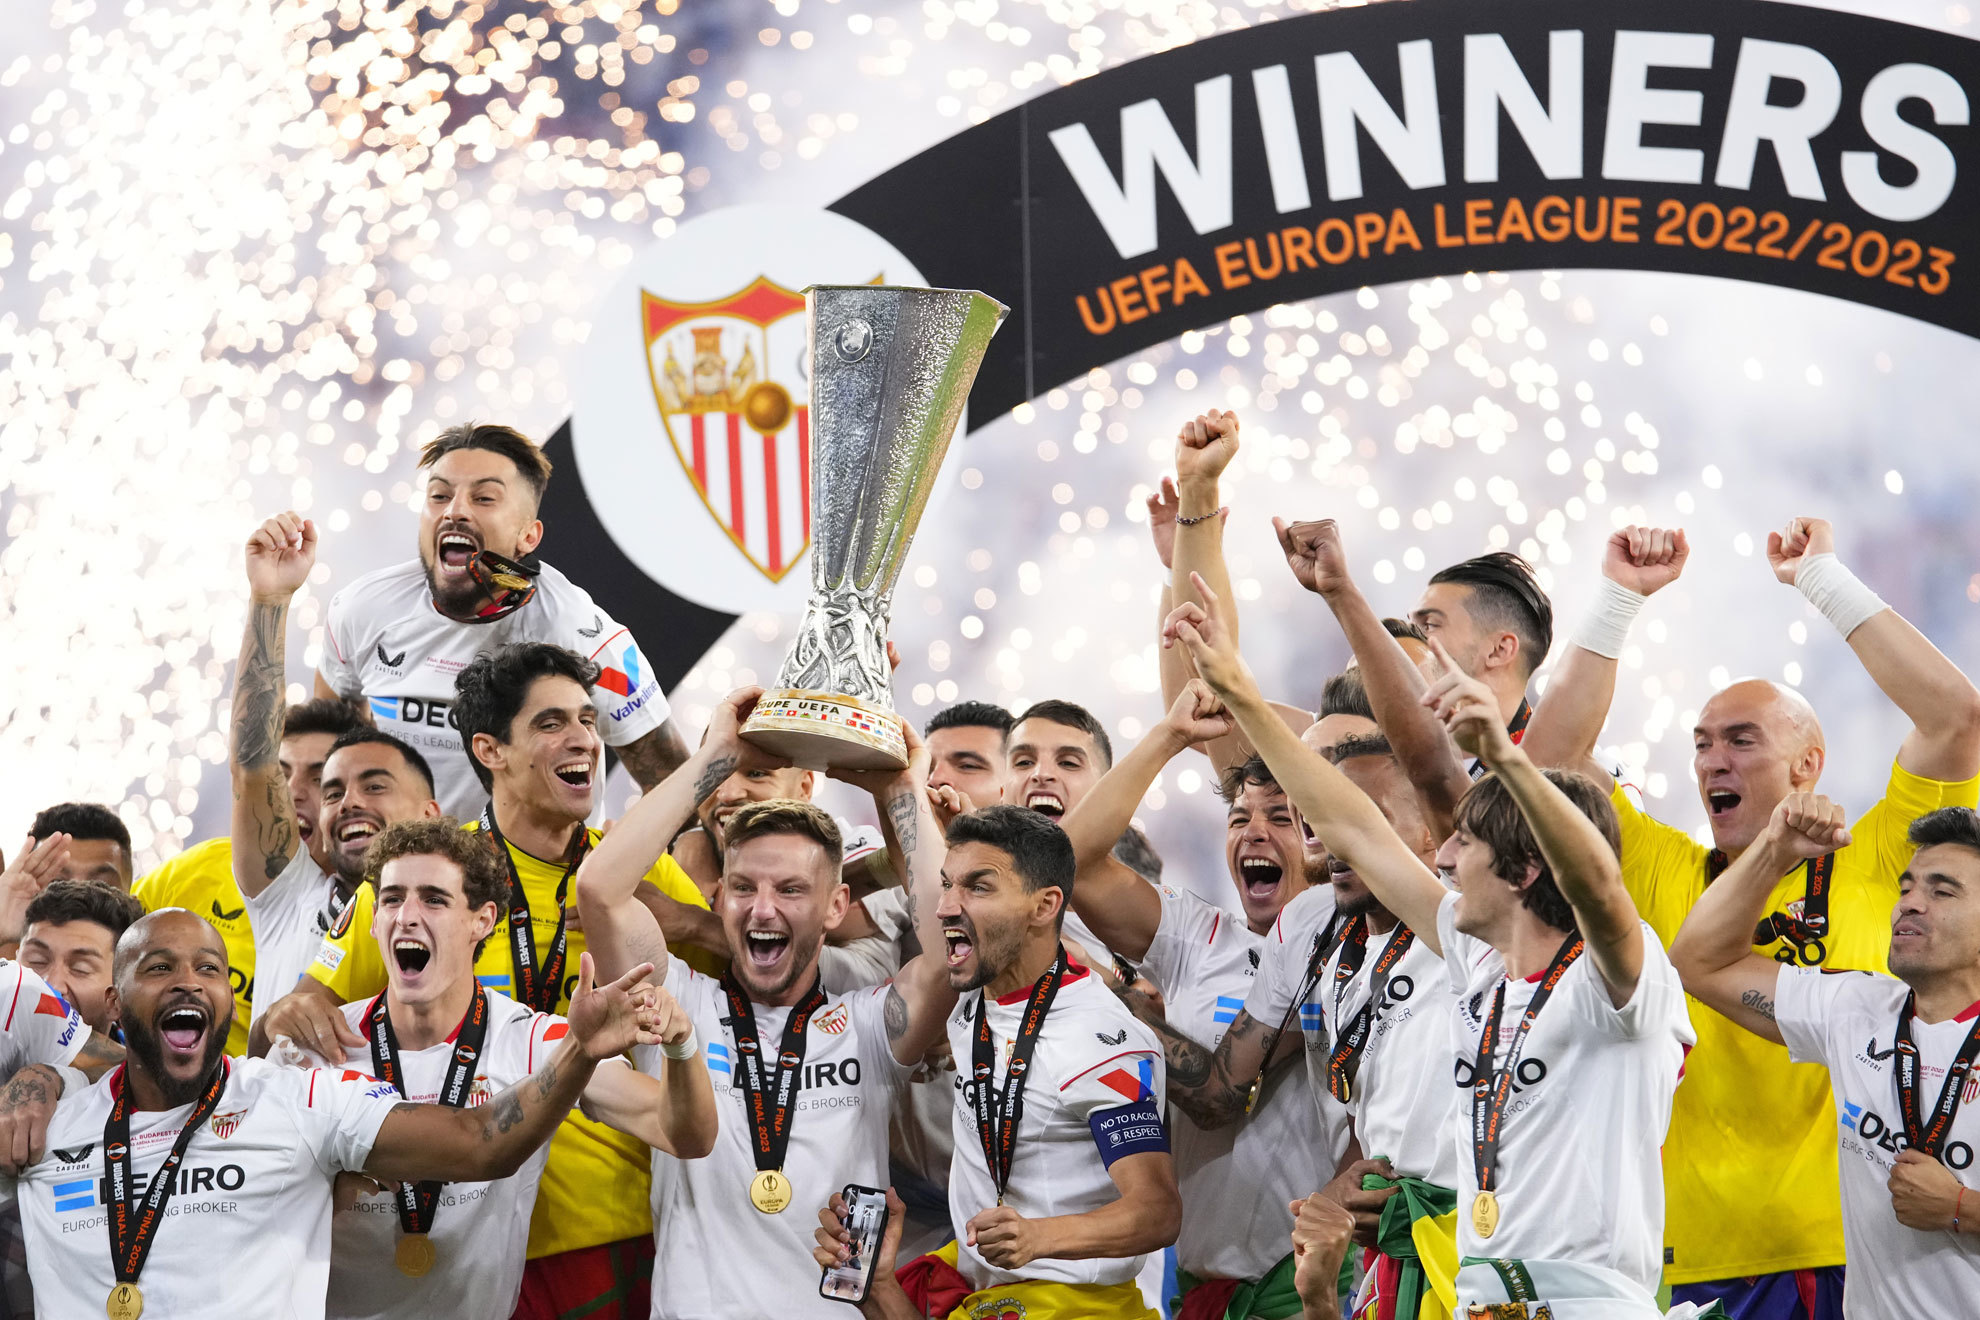 ¡¡La Séptima!! ¡¡Viva la Sevilla League!!